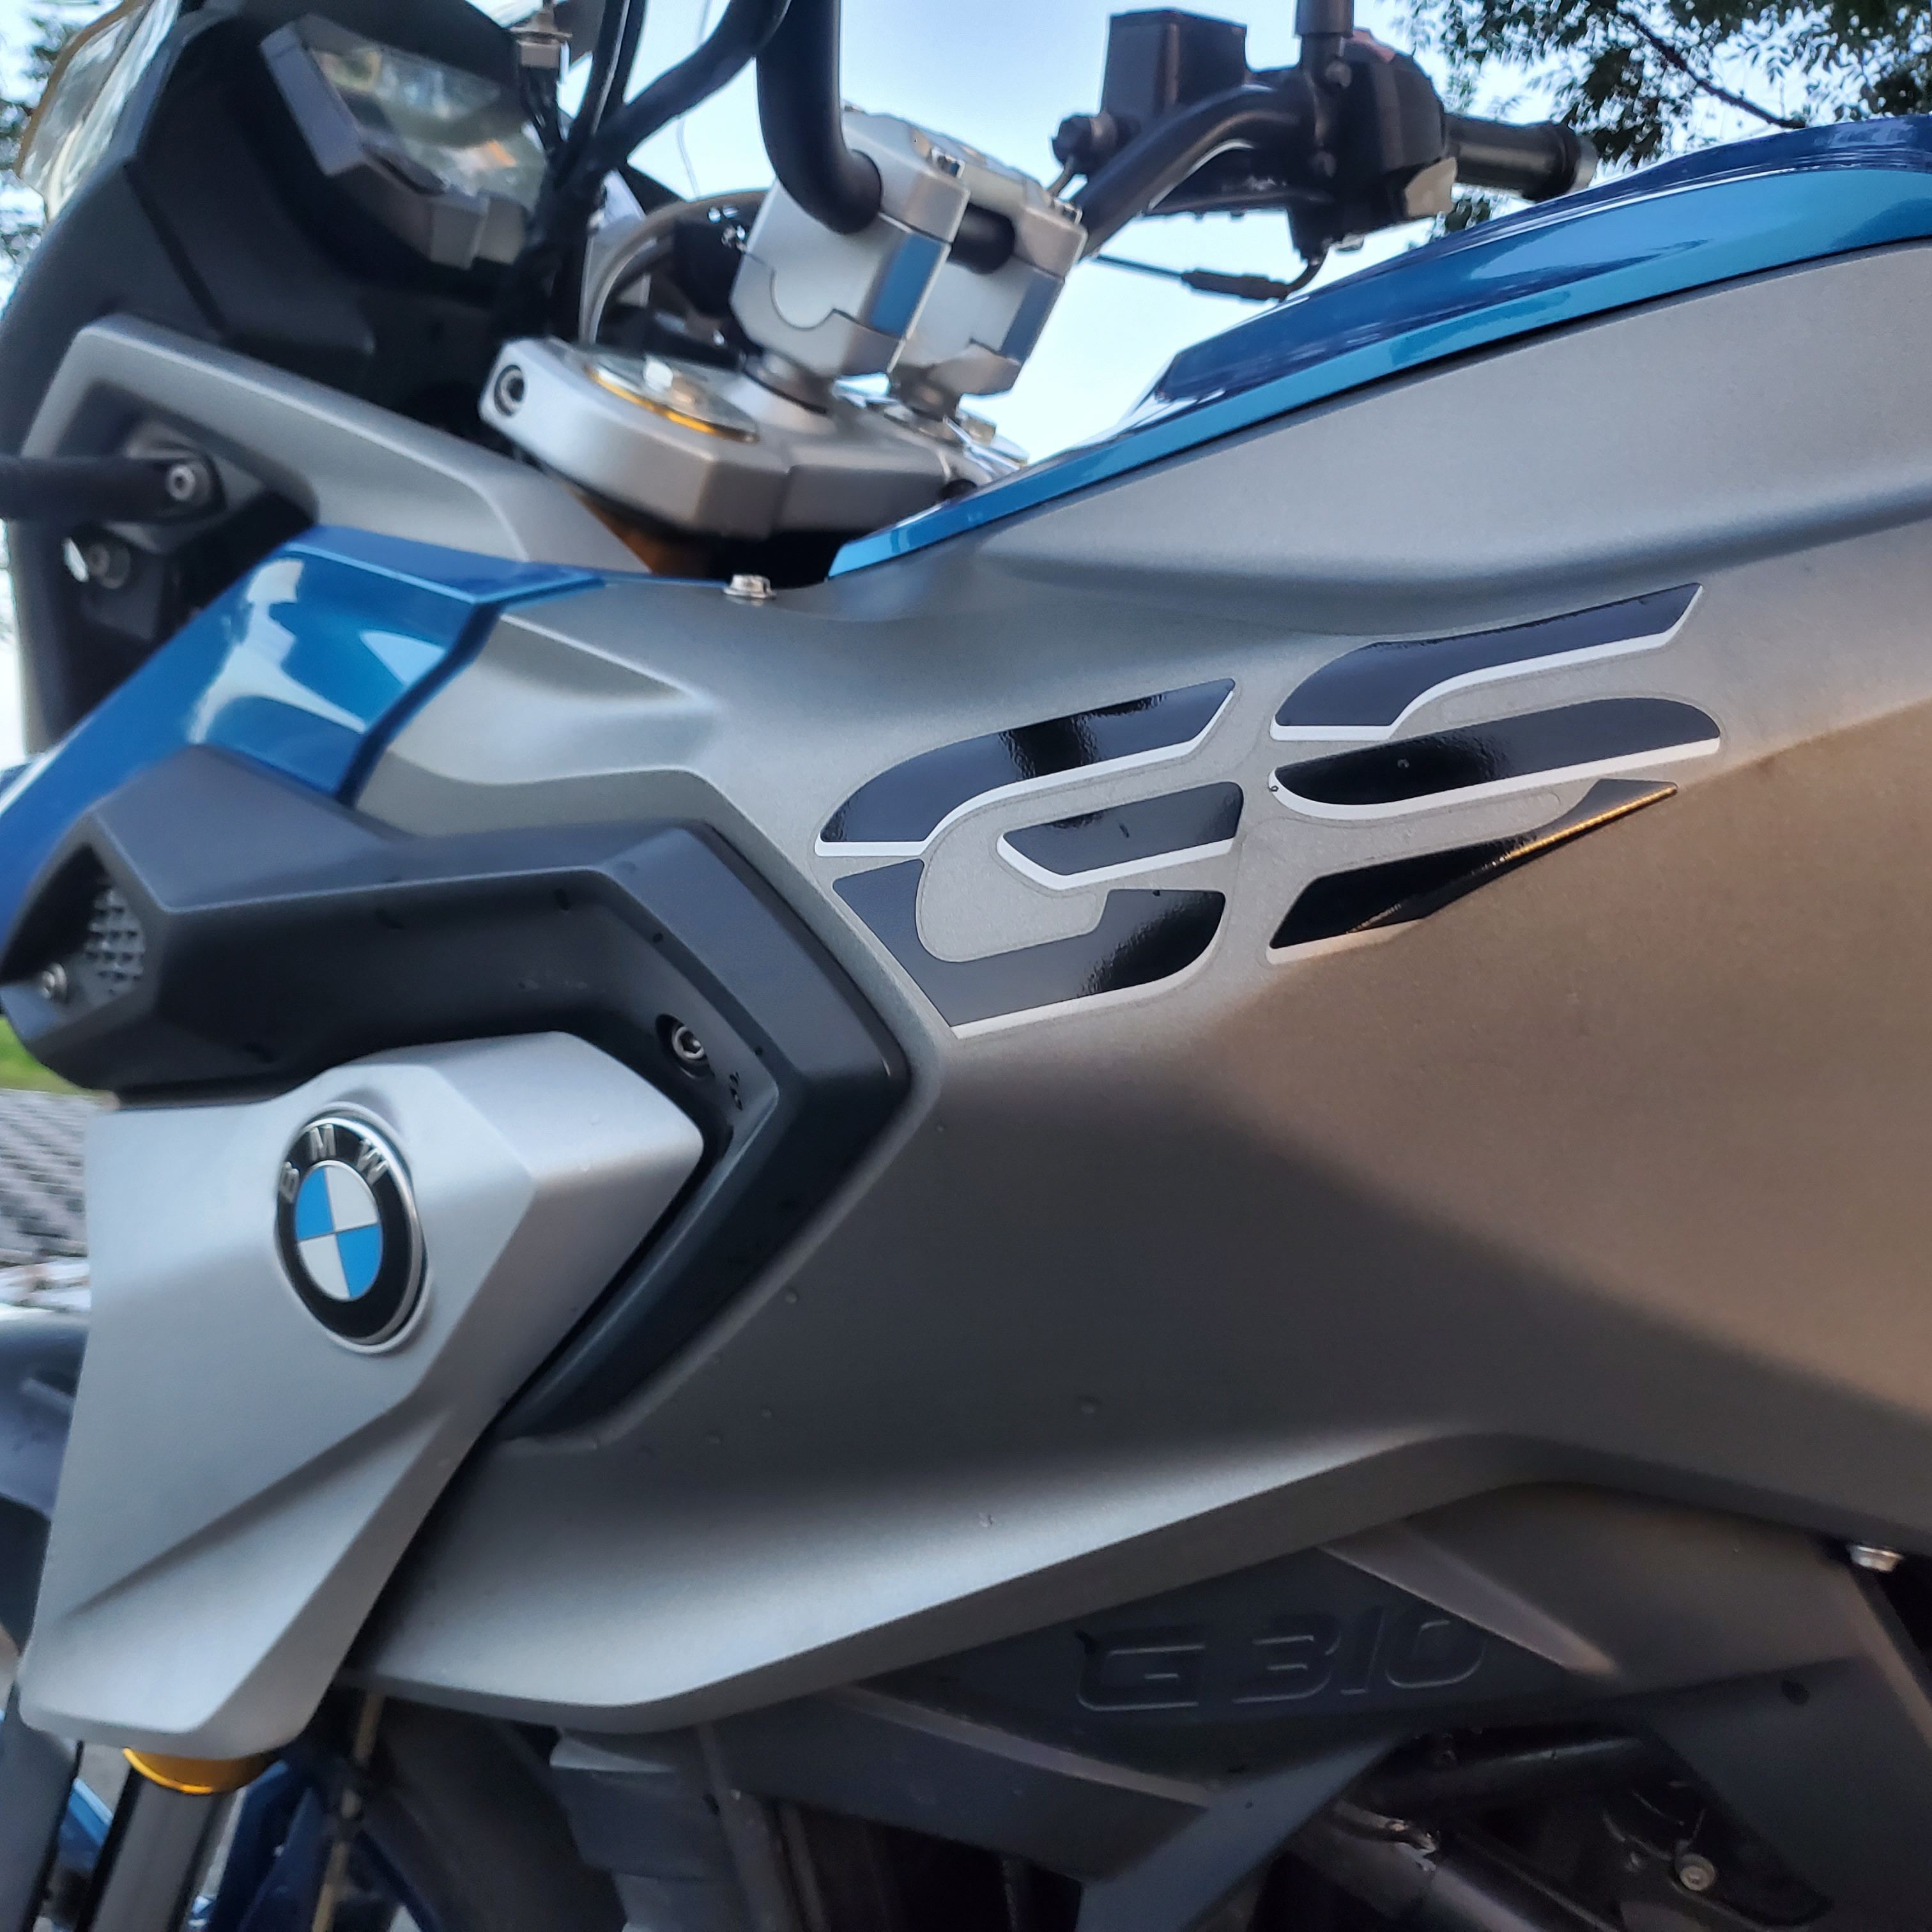 BMW G310GS - 中古/二手車出售中 2018 BMW G310GS 寶馬 小水鳥 多功能車 黃牌重機 可全額貸 可車換車 米漿 | 飛翔國際